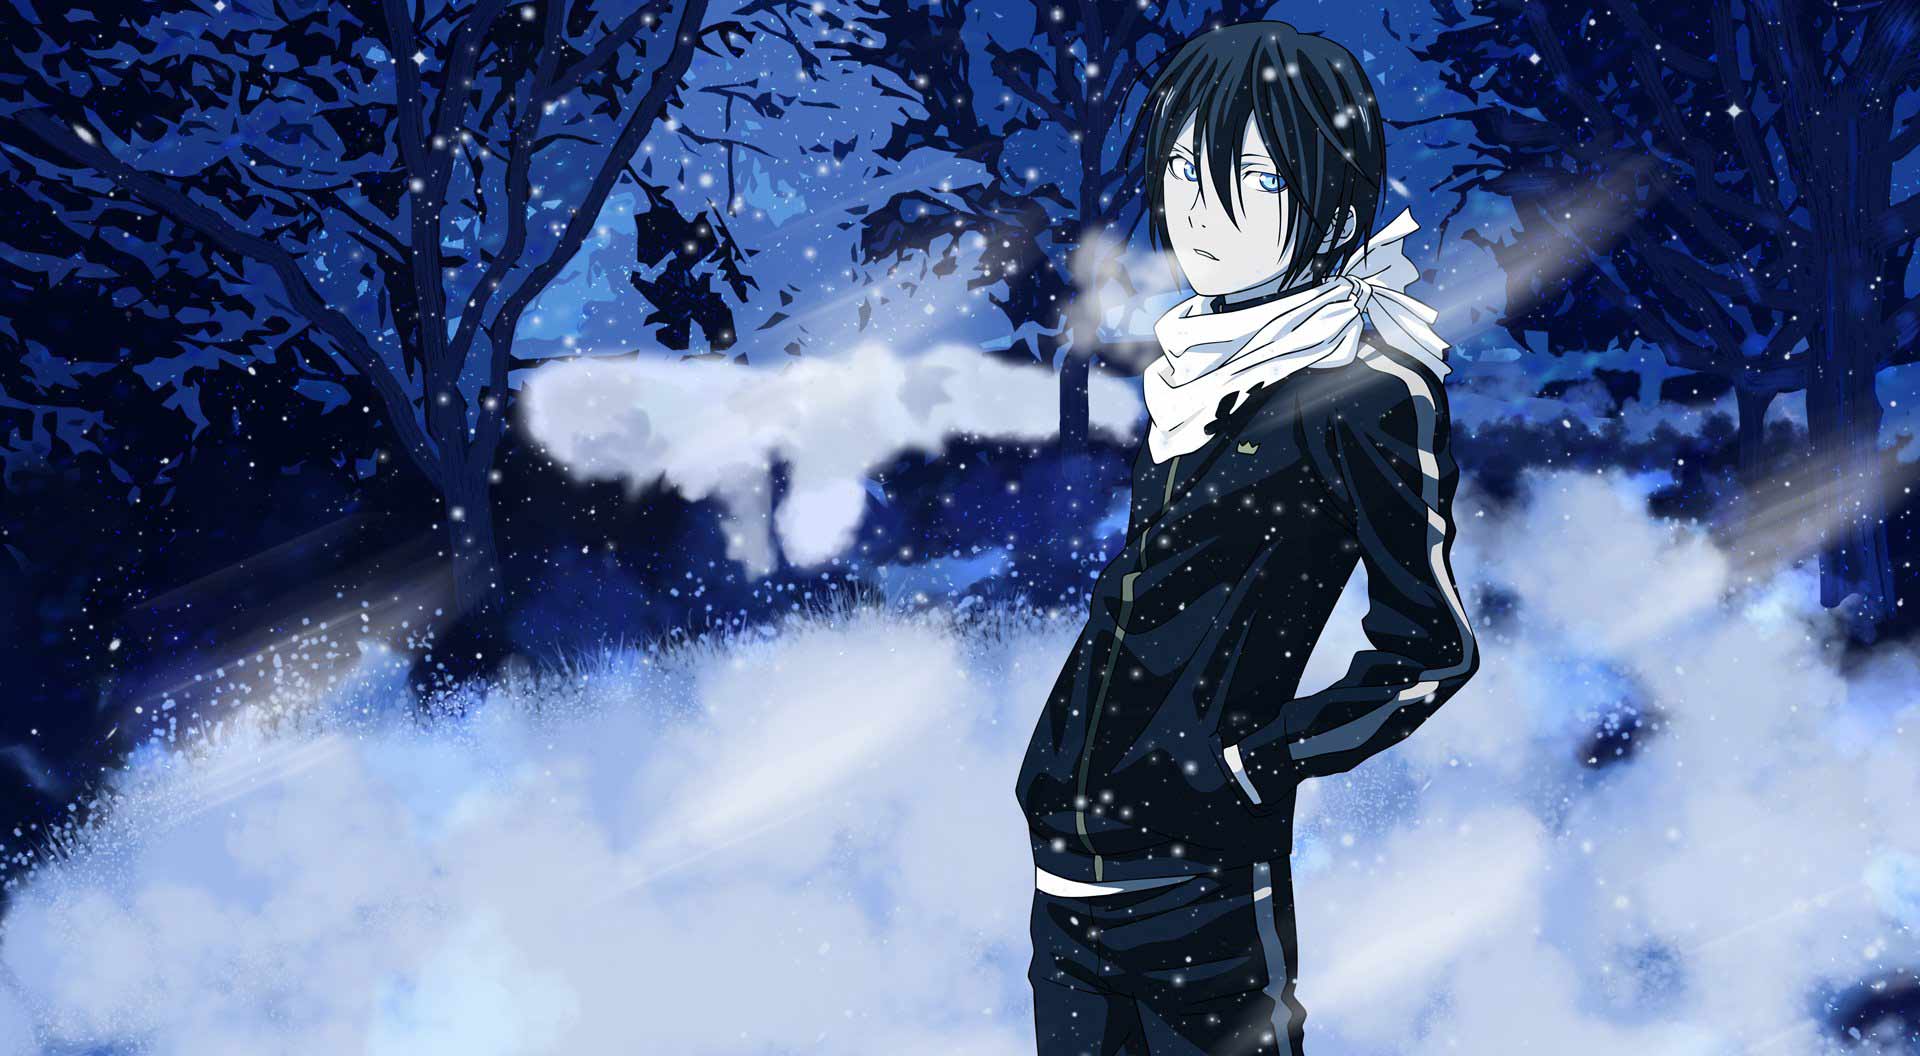 شخصیت یاتو از انیمه نواراگامی در میان منظره برفی با دستمال گردن سفید